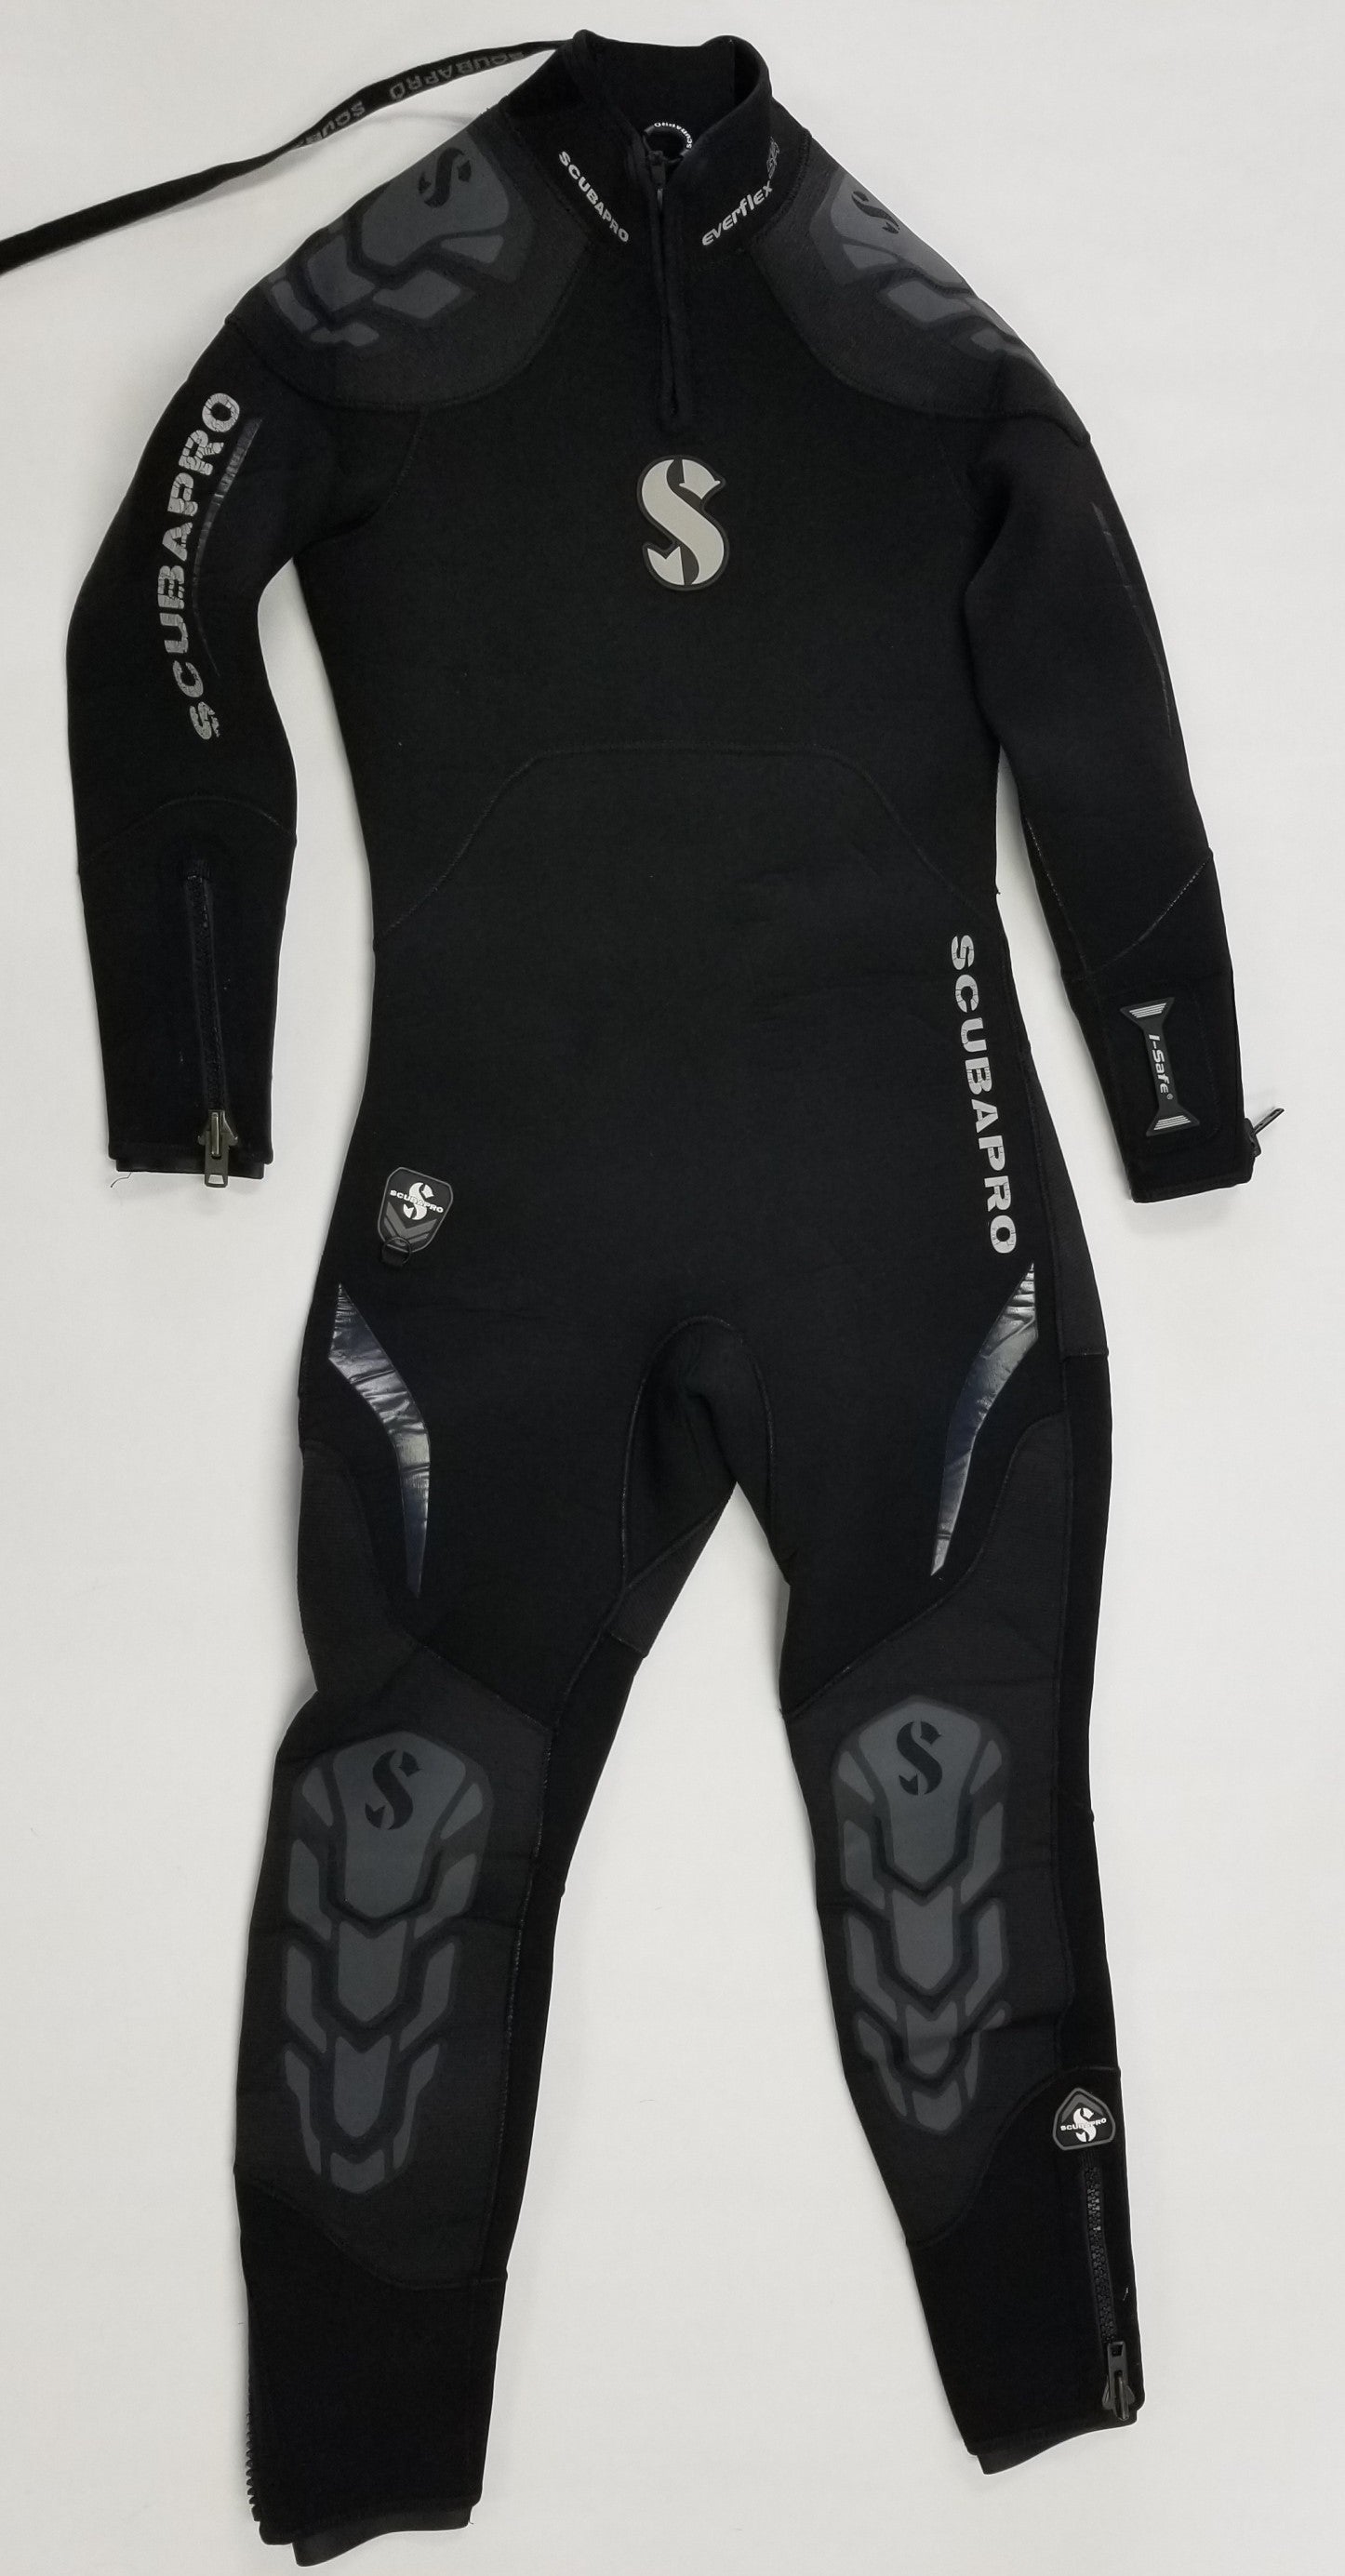 Used ScubaPro Men's 5/4mm Everflex Steamer Dive Wetsuit - Black, Size:  Large Short